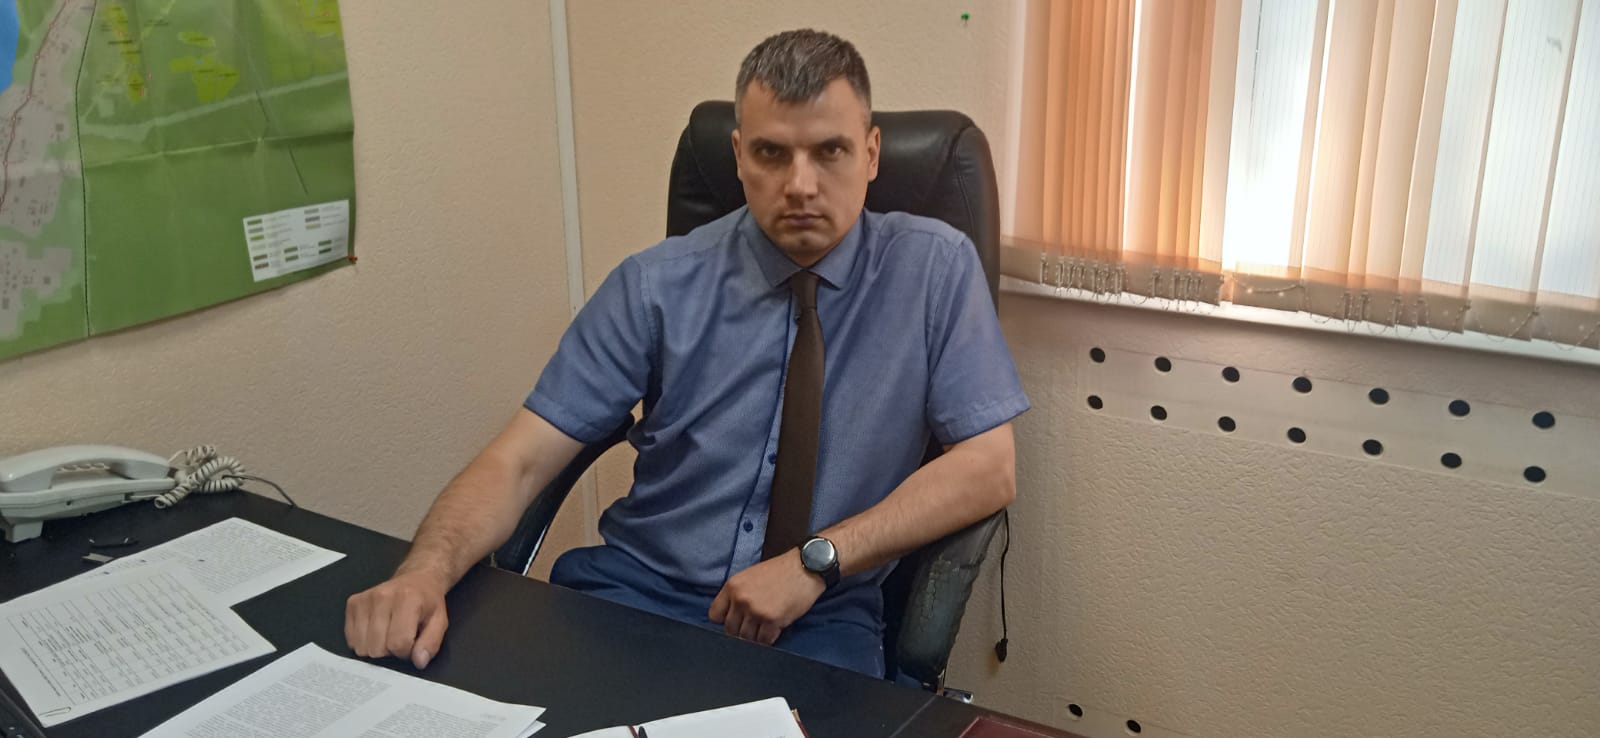 Начальник полиции Соснового Бора Алексей Бухтияров: Правоохранительные органы не звонят жителям по поводу безопасных счетов и кредитов